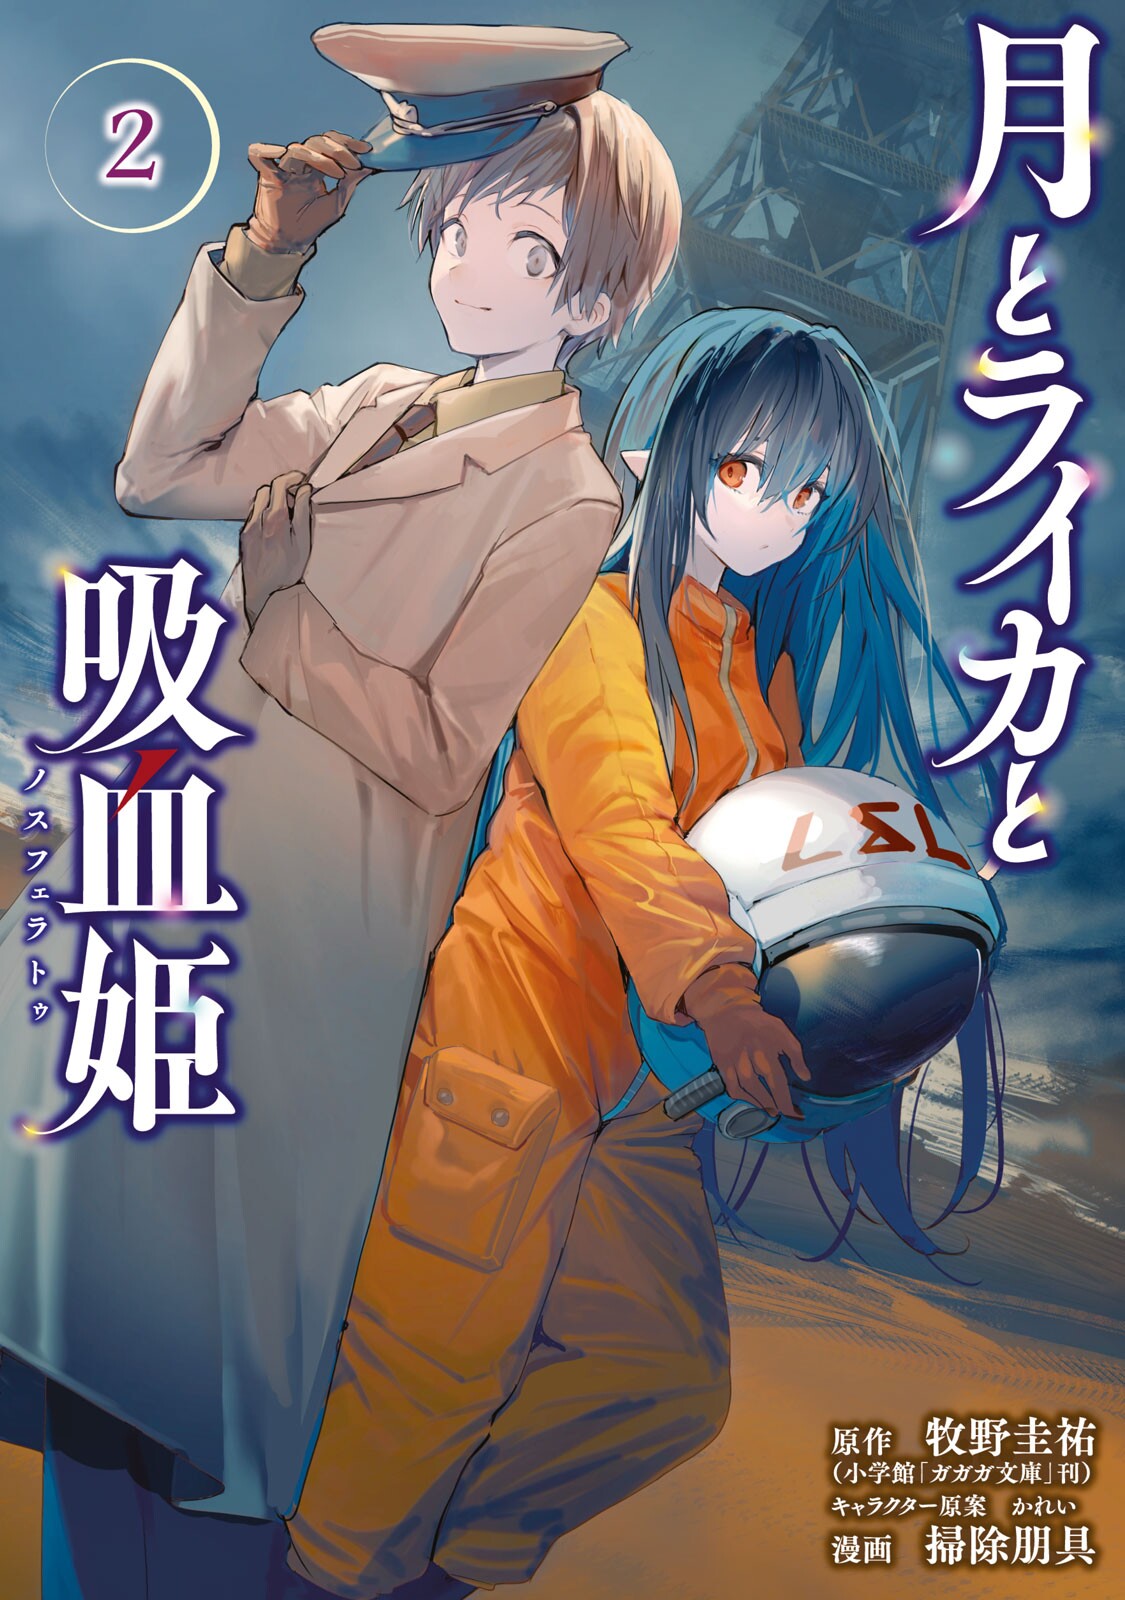 Light Novel, Tsuki to Laika to Nosferatu Wiki